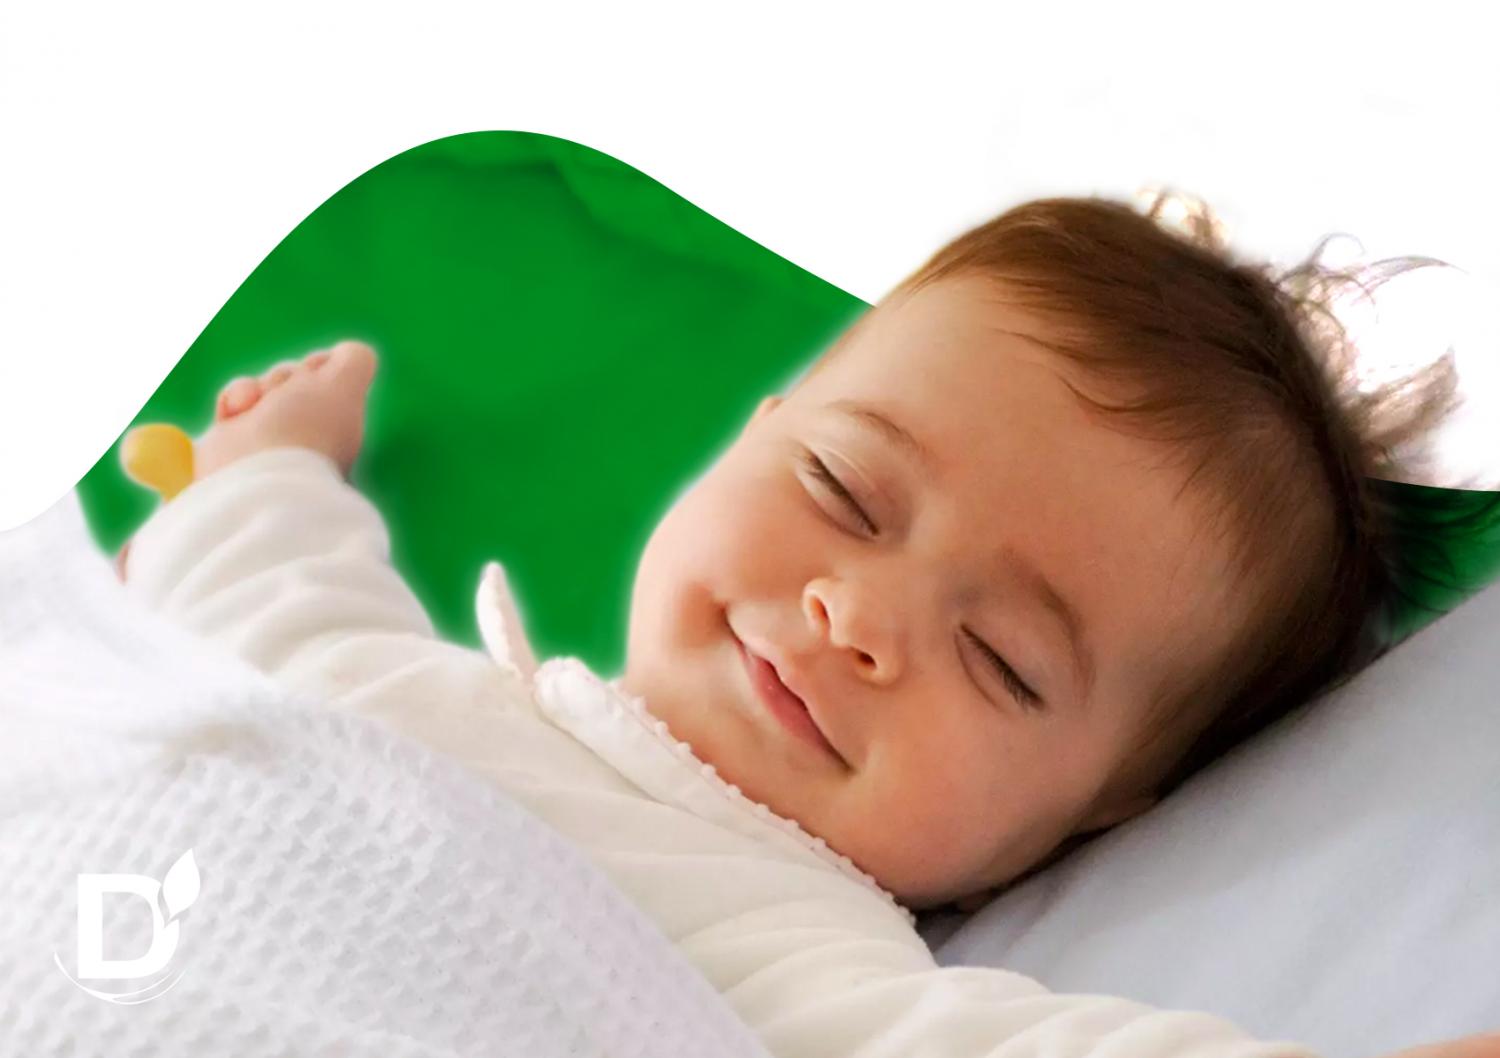 Сплю, как младенец: советы для крепкого и здорового сна